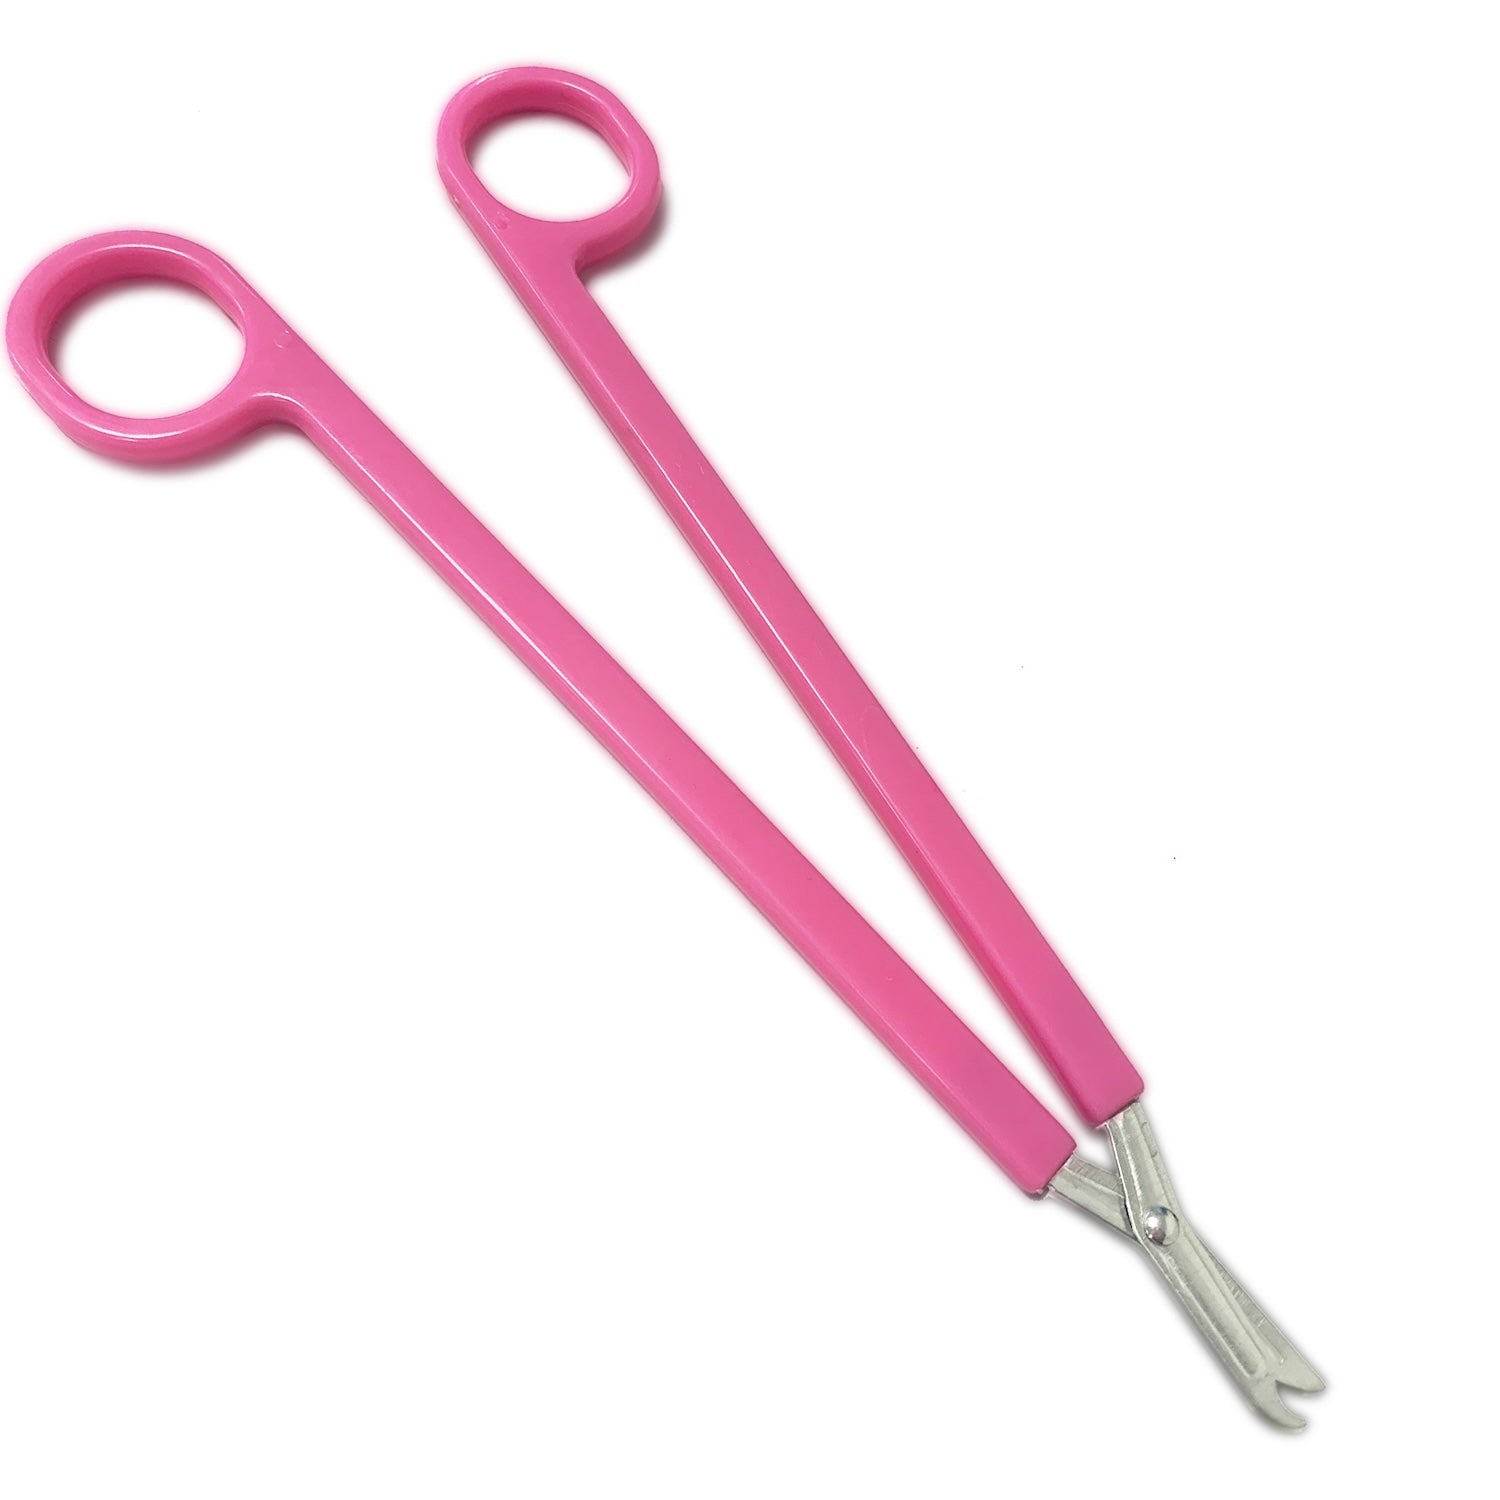 Instramed Long Scissors | Sharp/Sharp | 22cm | Plastic Handle | Single